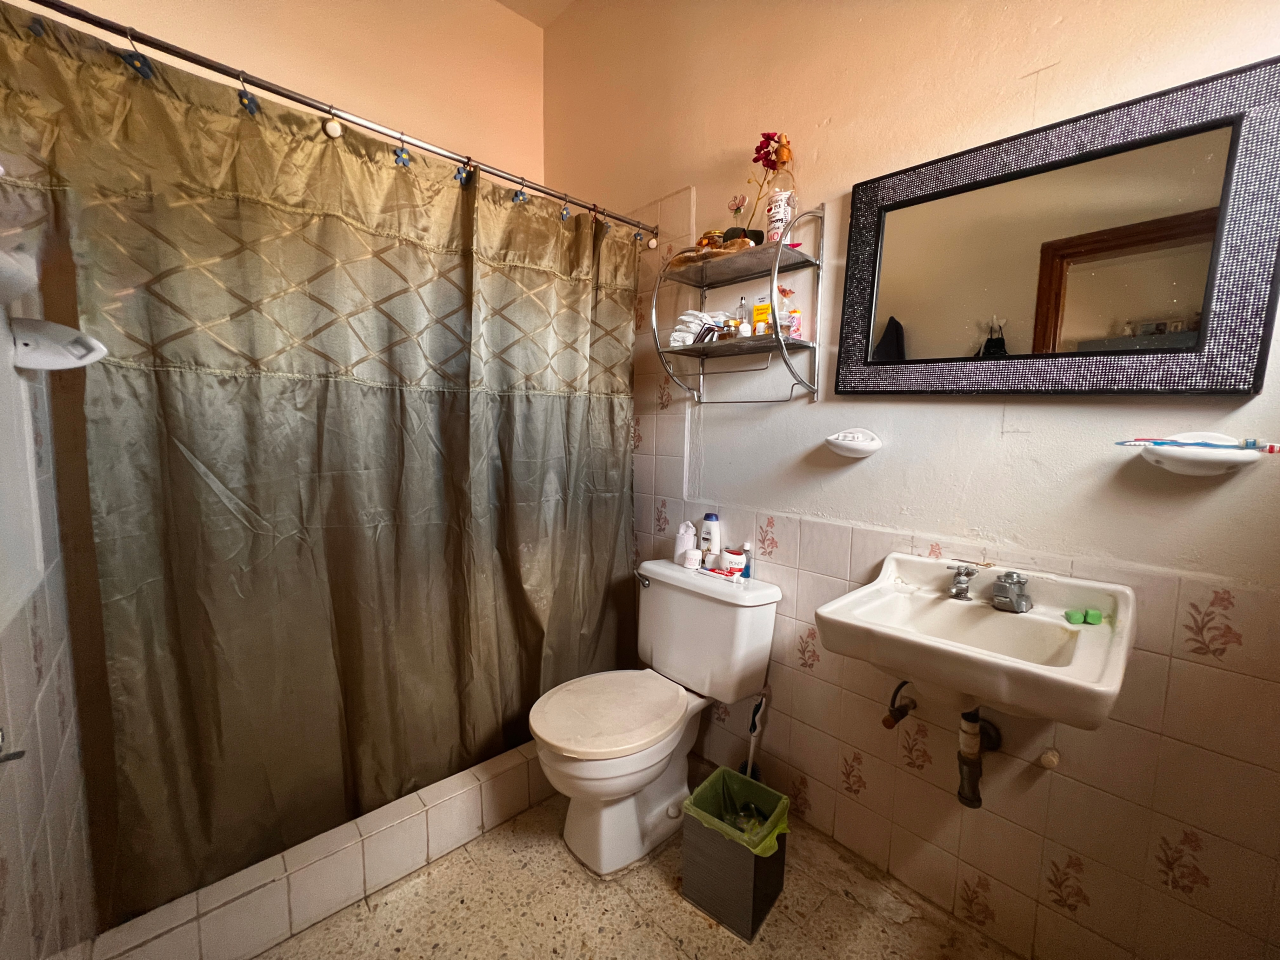 Baño de la casa con su inodoro, lavamanos y ducha con cortina color verde.